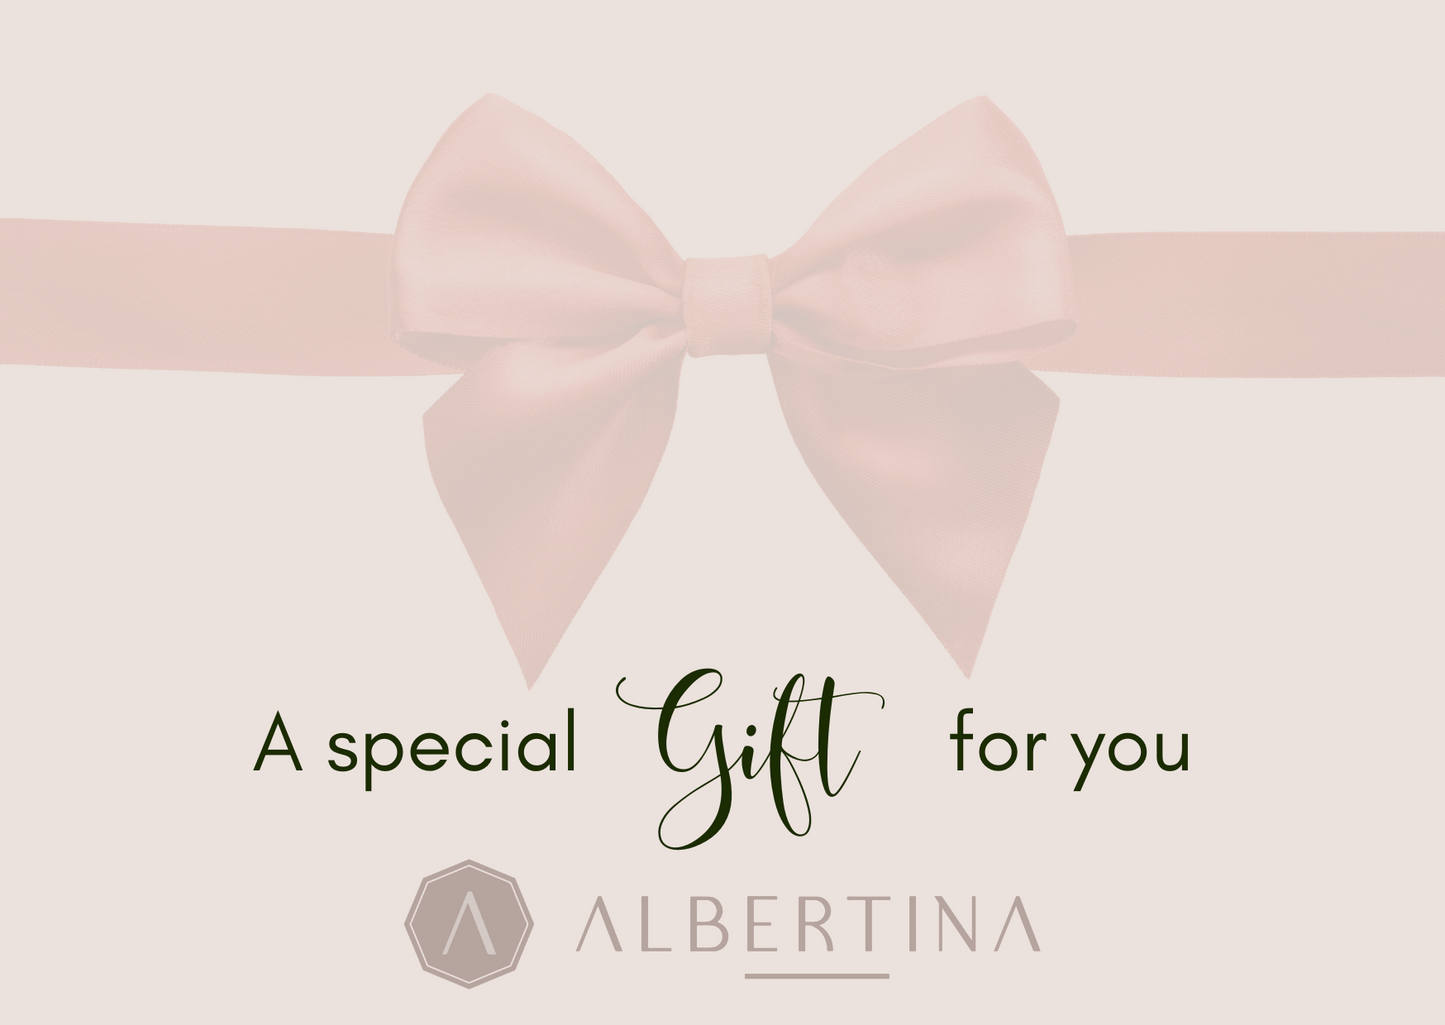 Albertina butik gift card